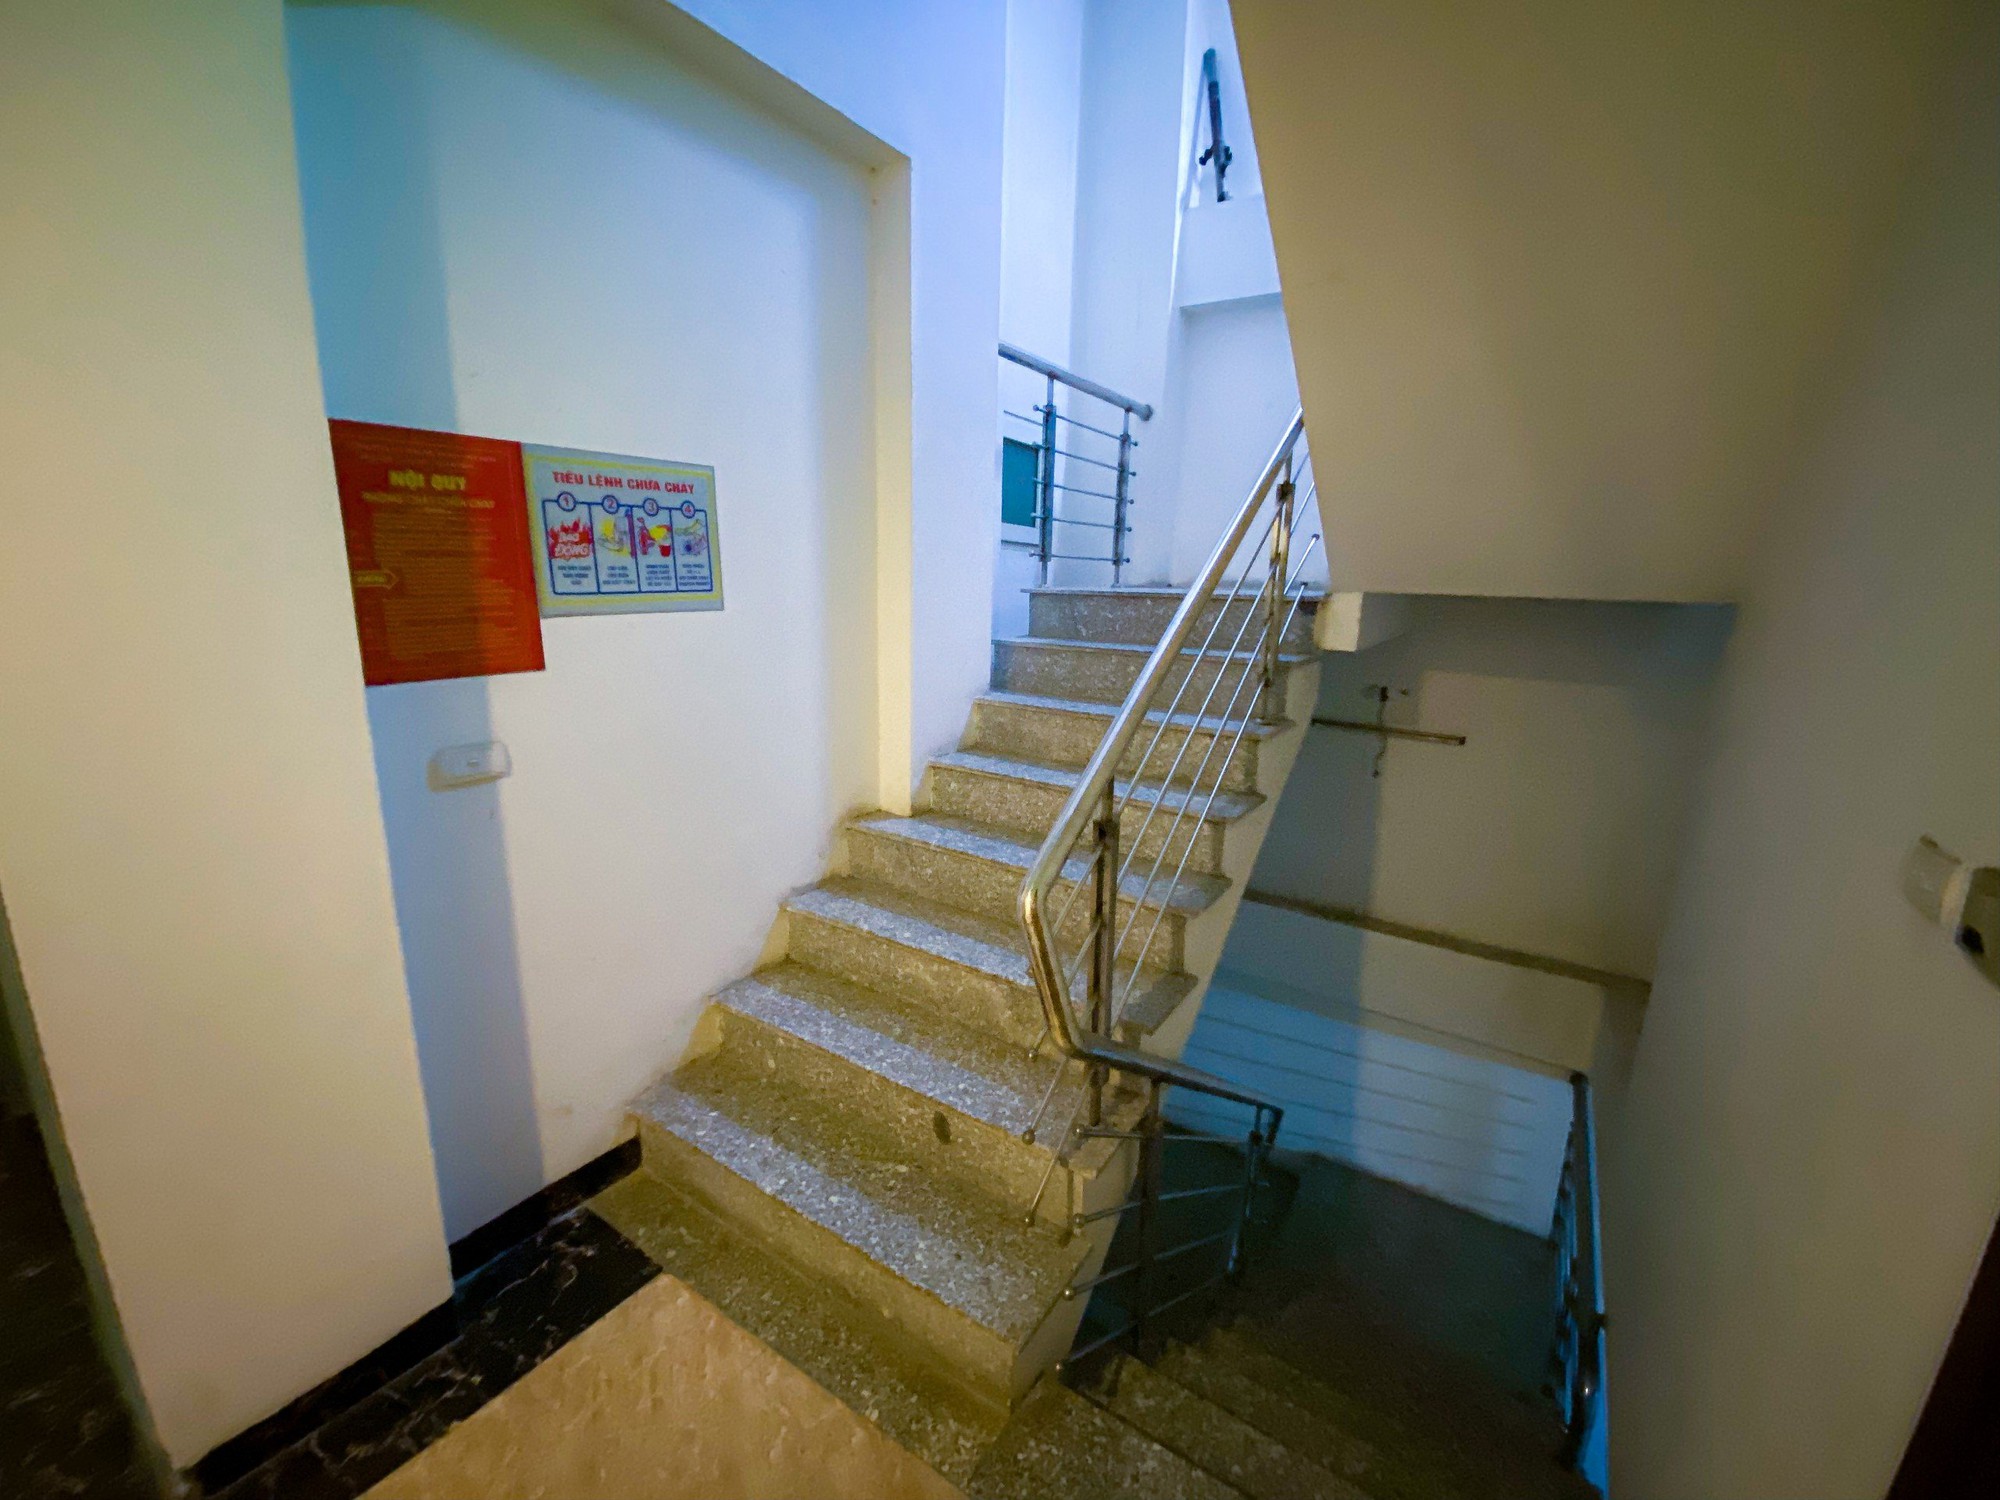 Trong các chung cư mini của ông Minh chủ yếu chỉ có cầu thang bộ để làm lối thoát hiểm